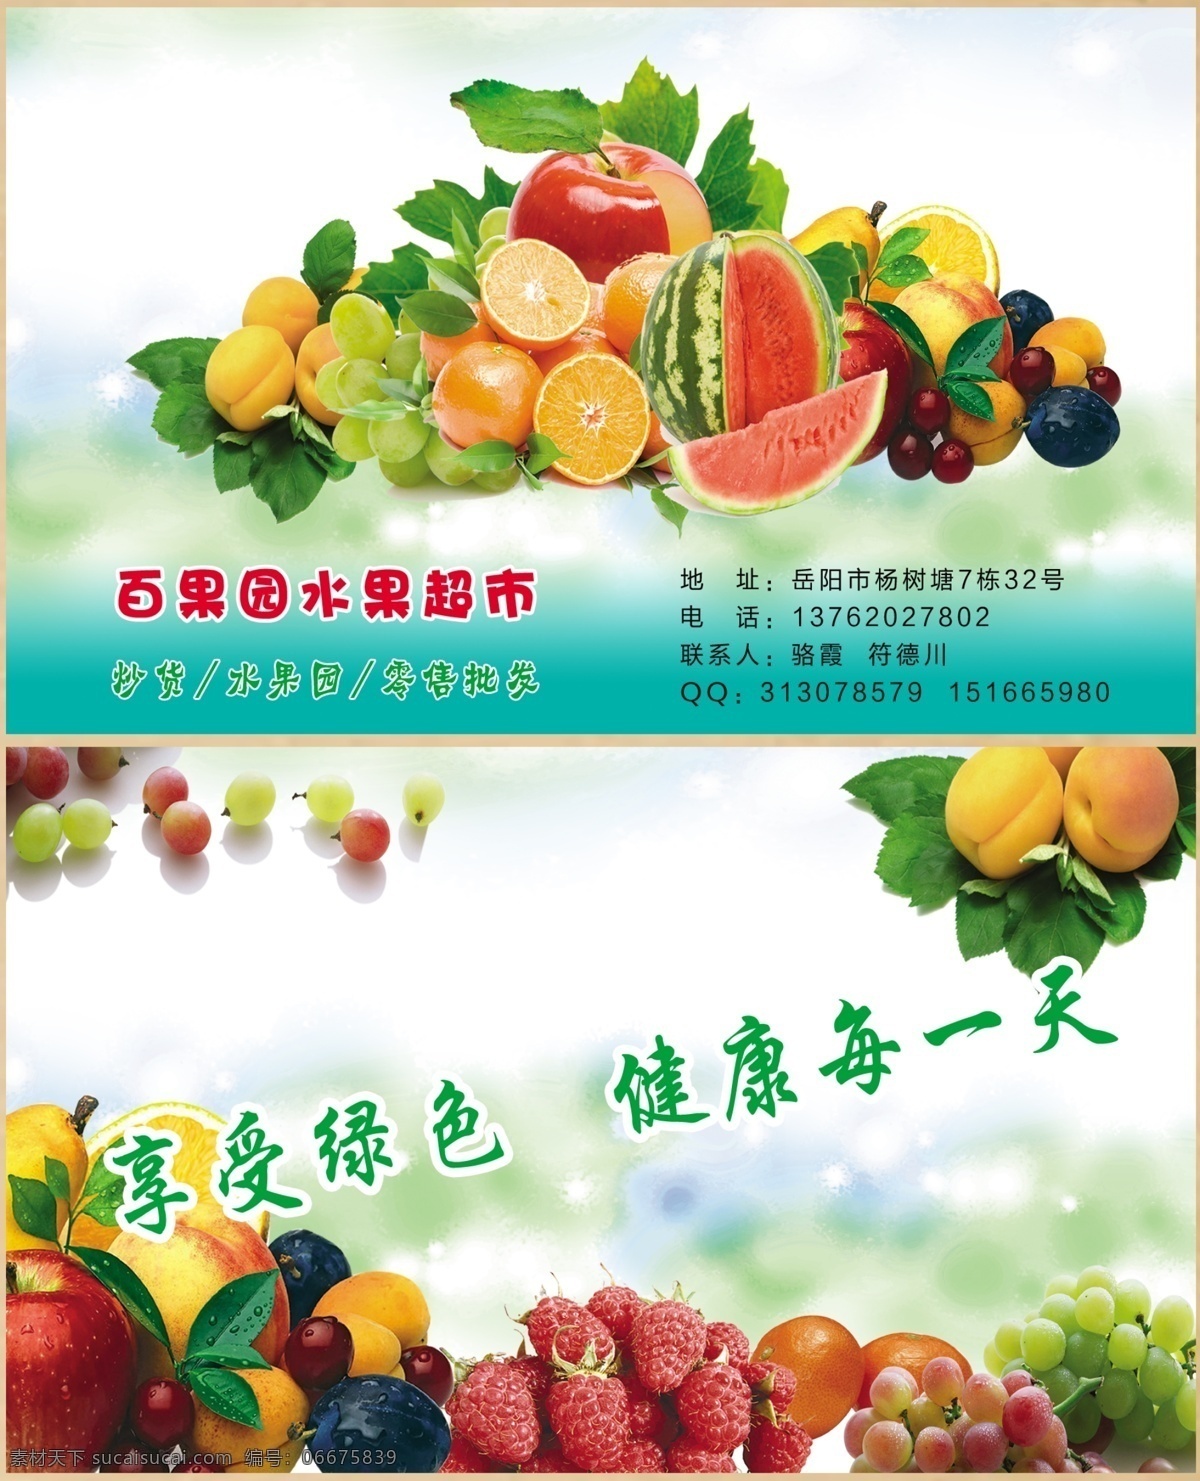 水果名片 水果超市名片 水果批发名片 水果店名片 水果 名片卡片 广告设计模板 源文件